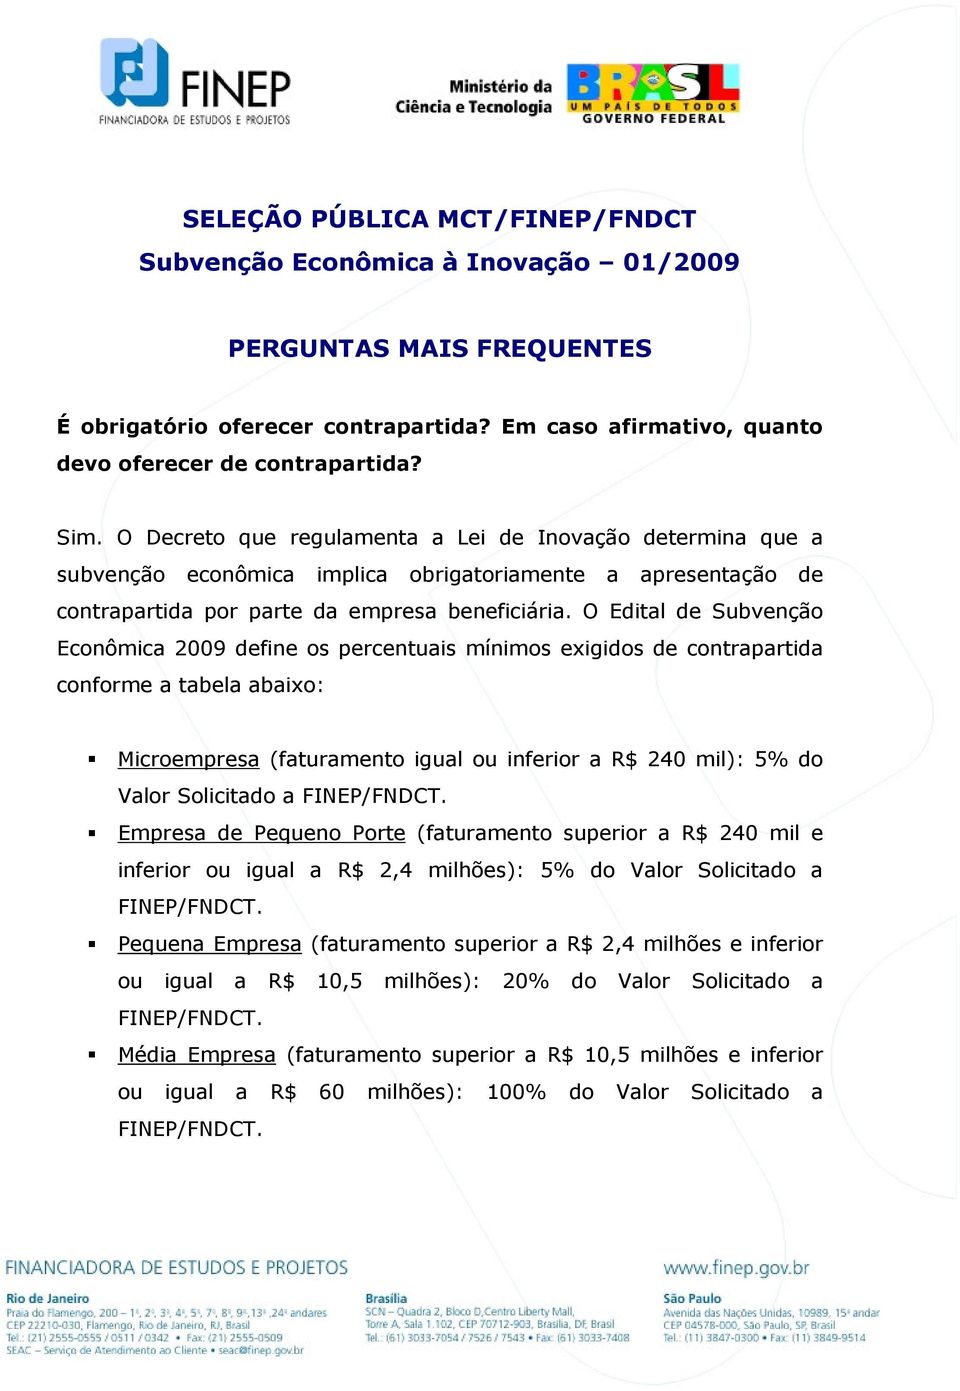 O Edital de Subvenção Econômica 2009 define os percentuais mínimos exigidos de contrapartida conforme a tabela abaixo: Microempresa (faturamento igual ou inferior a R$ 240 mil): 5% do Valor